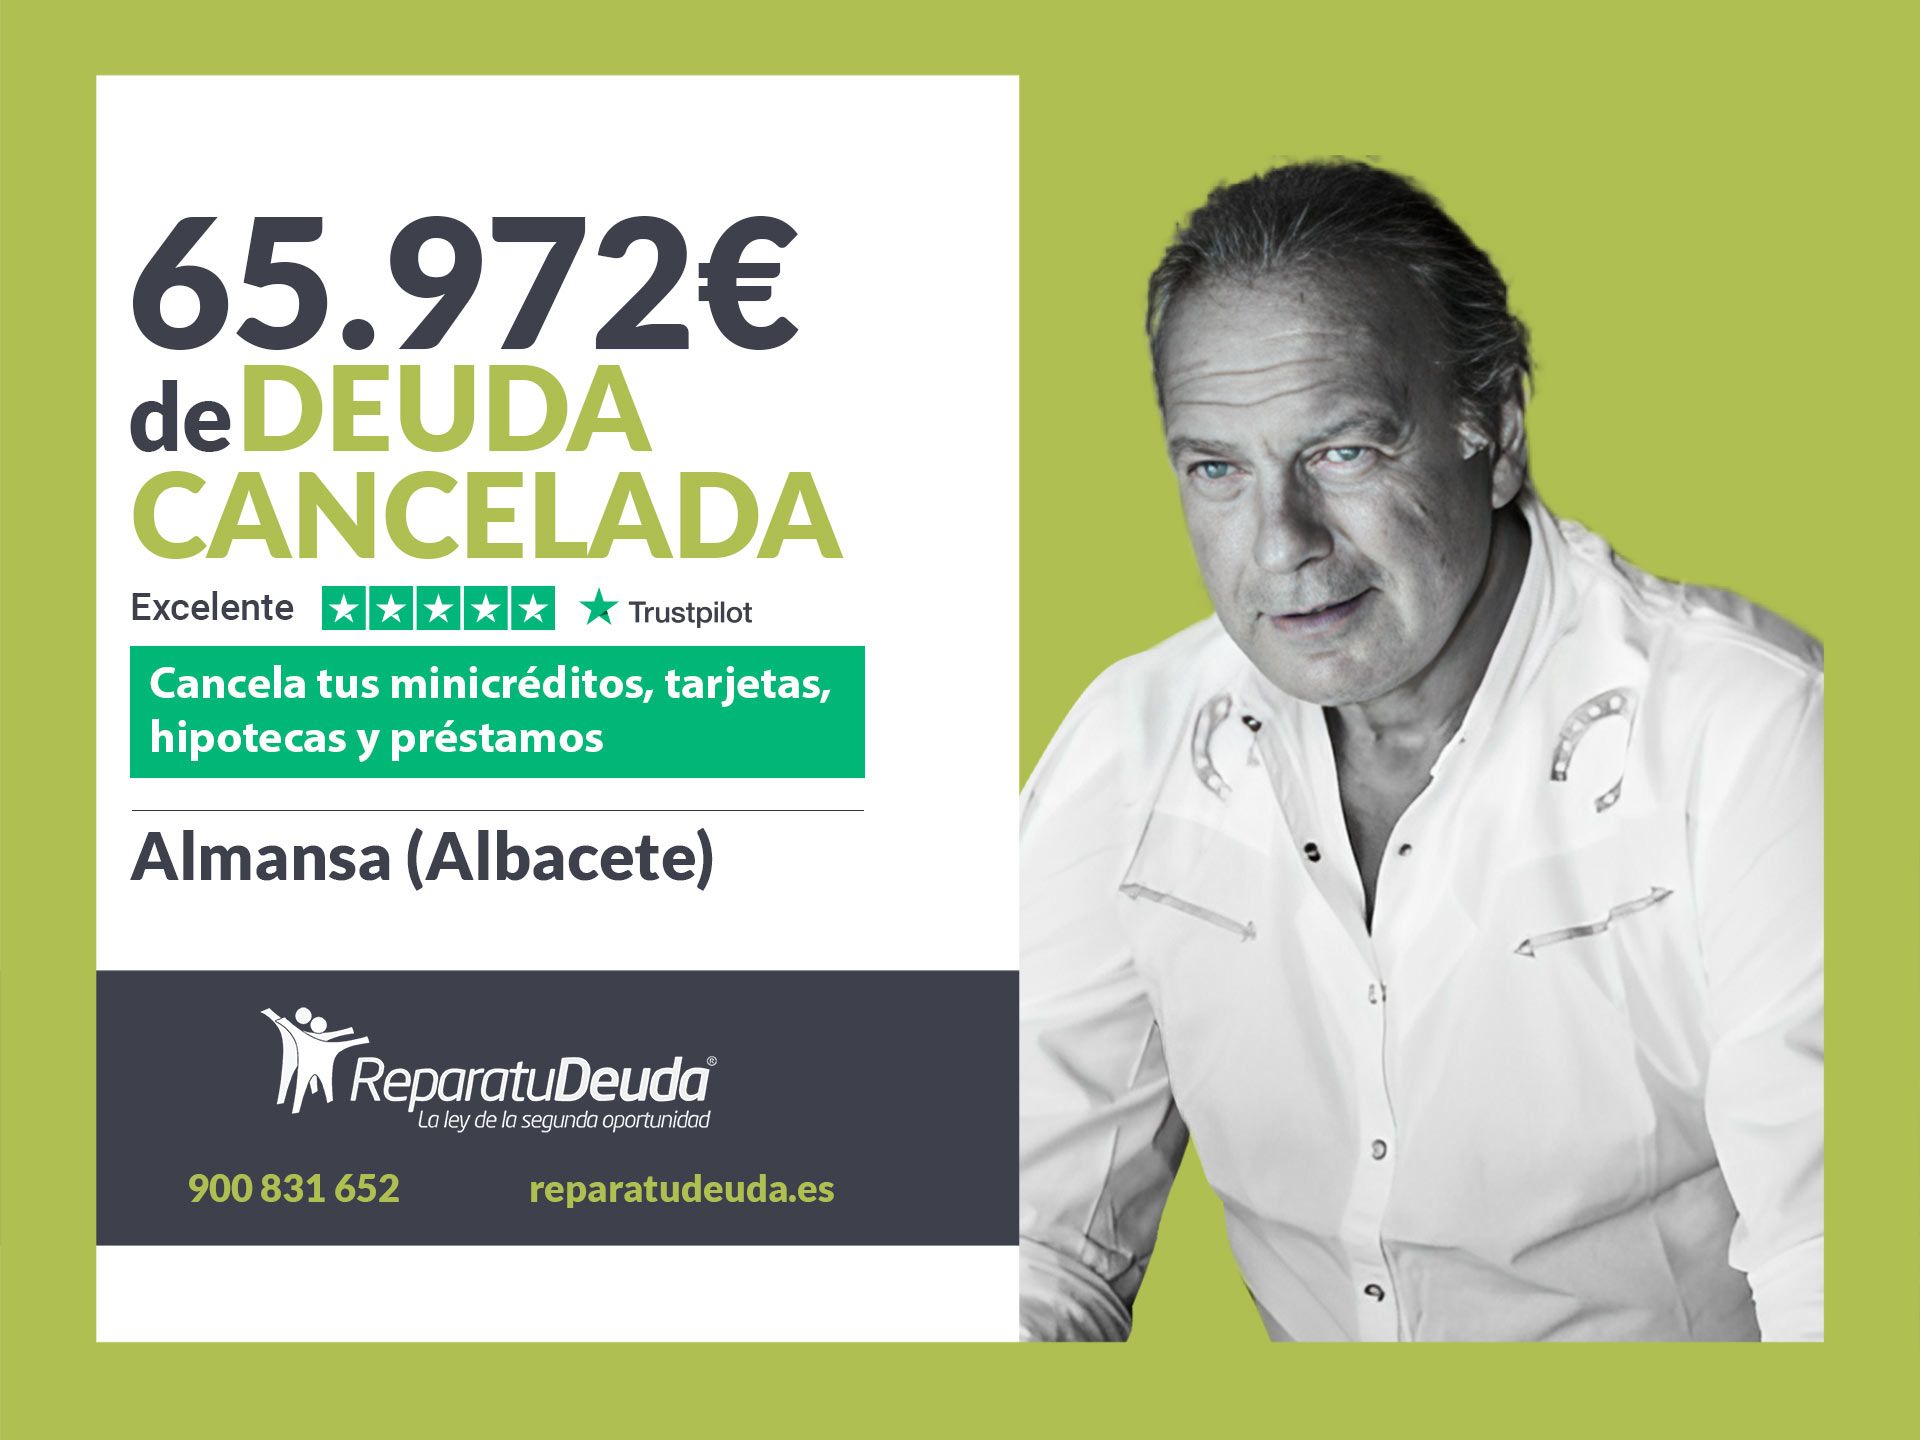 Repara tu Deuda Abogados cancela 65.972? en Almansa (Albacete) gracias a la Ley de Segunda Oportunidad